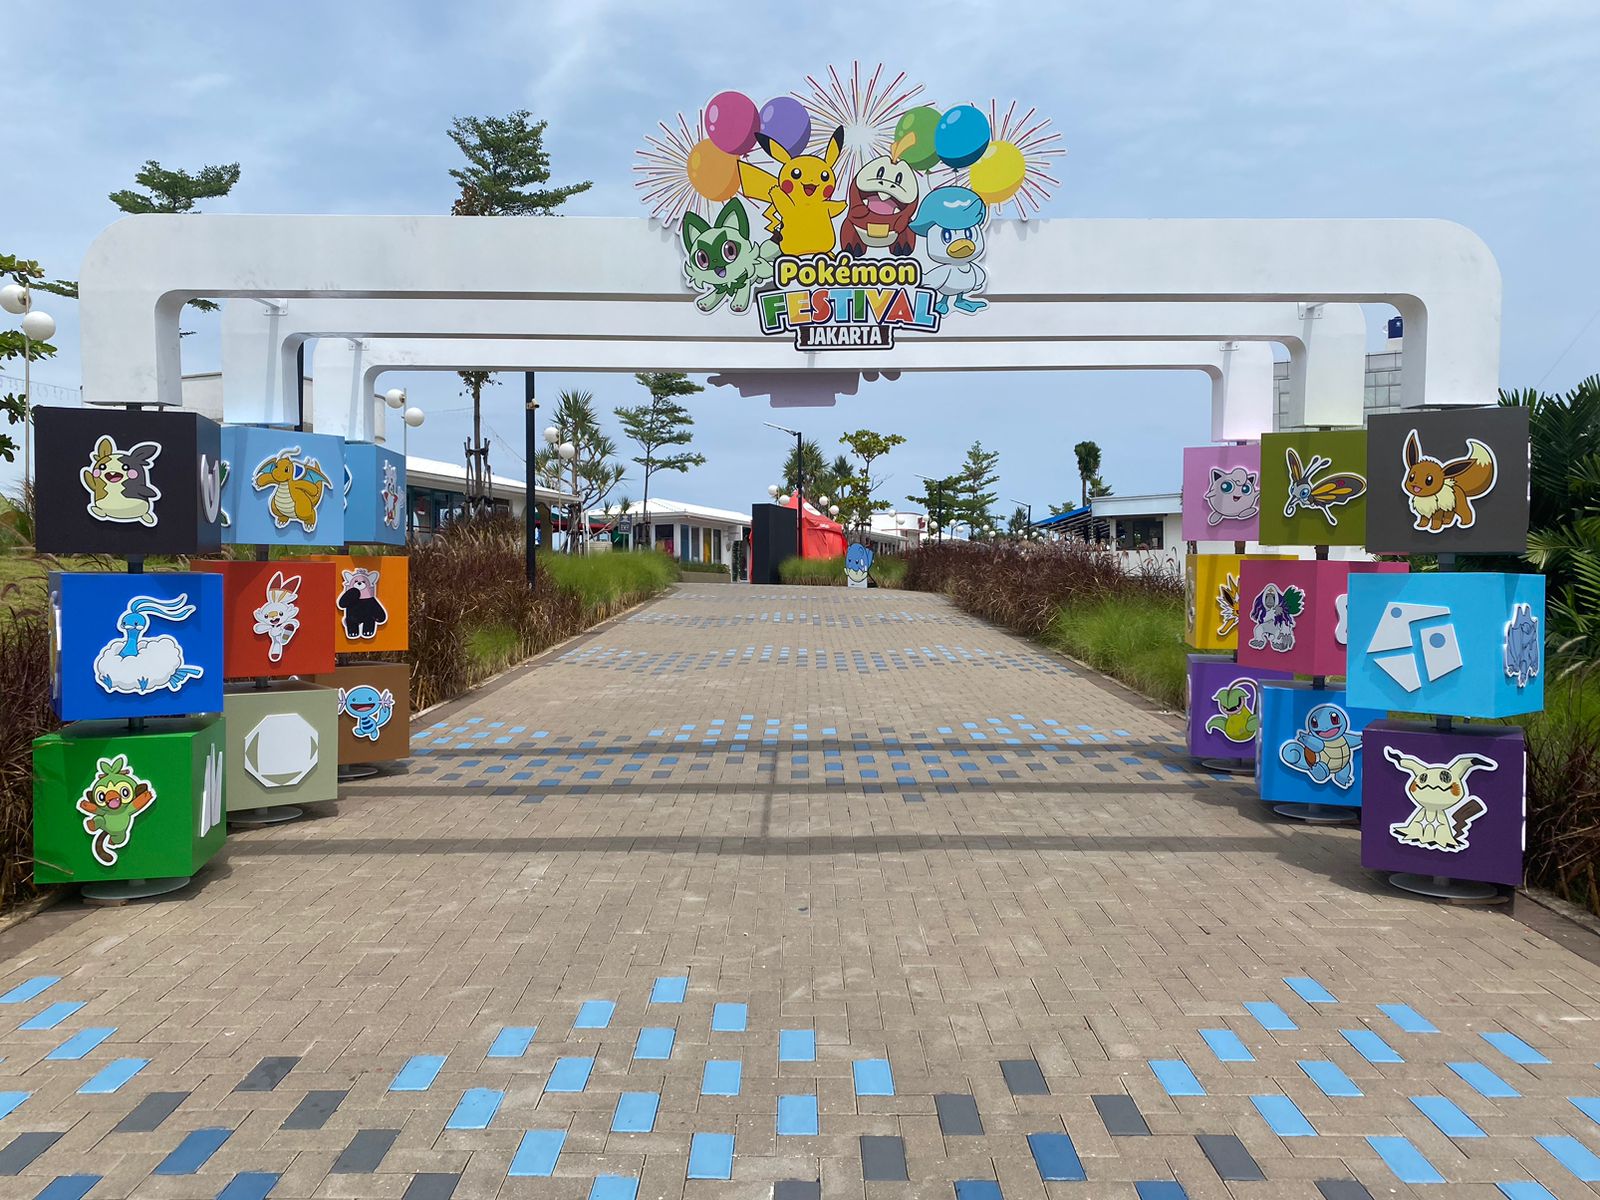 Tampilan instalasi gerbang di Cove by Batavia Pantai Indah Kapuk. (Sumber gambar: AKG Entertainment)